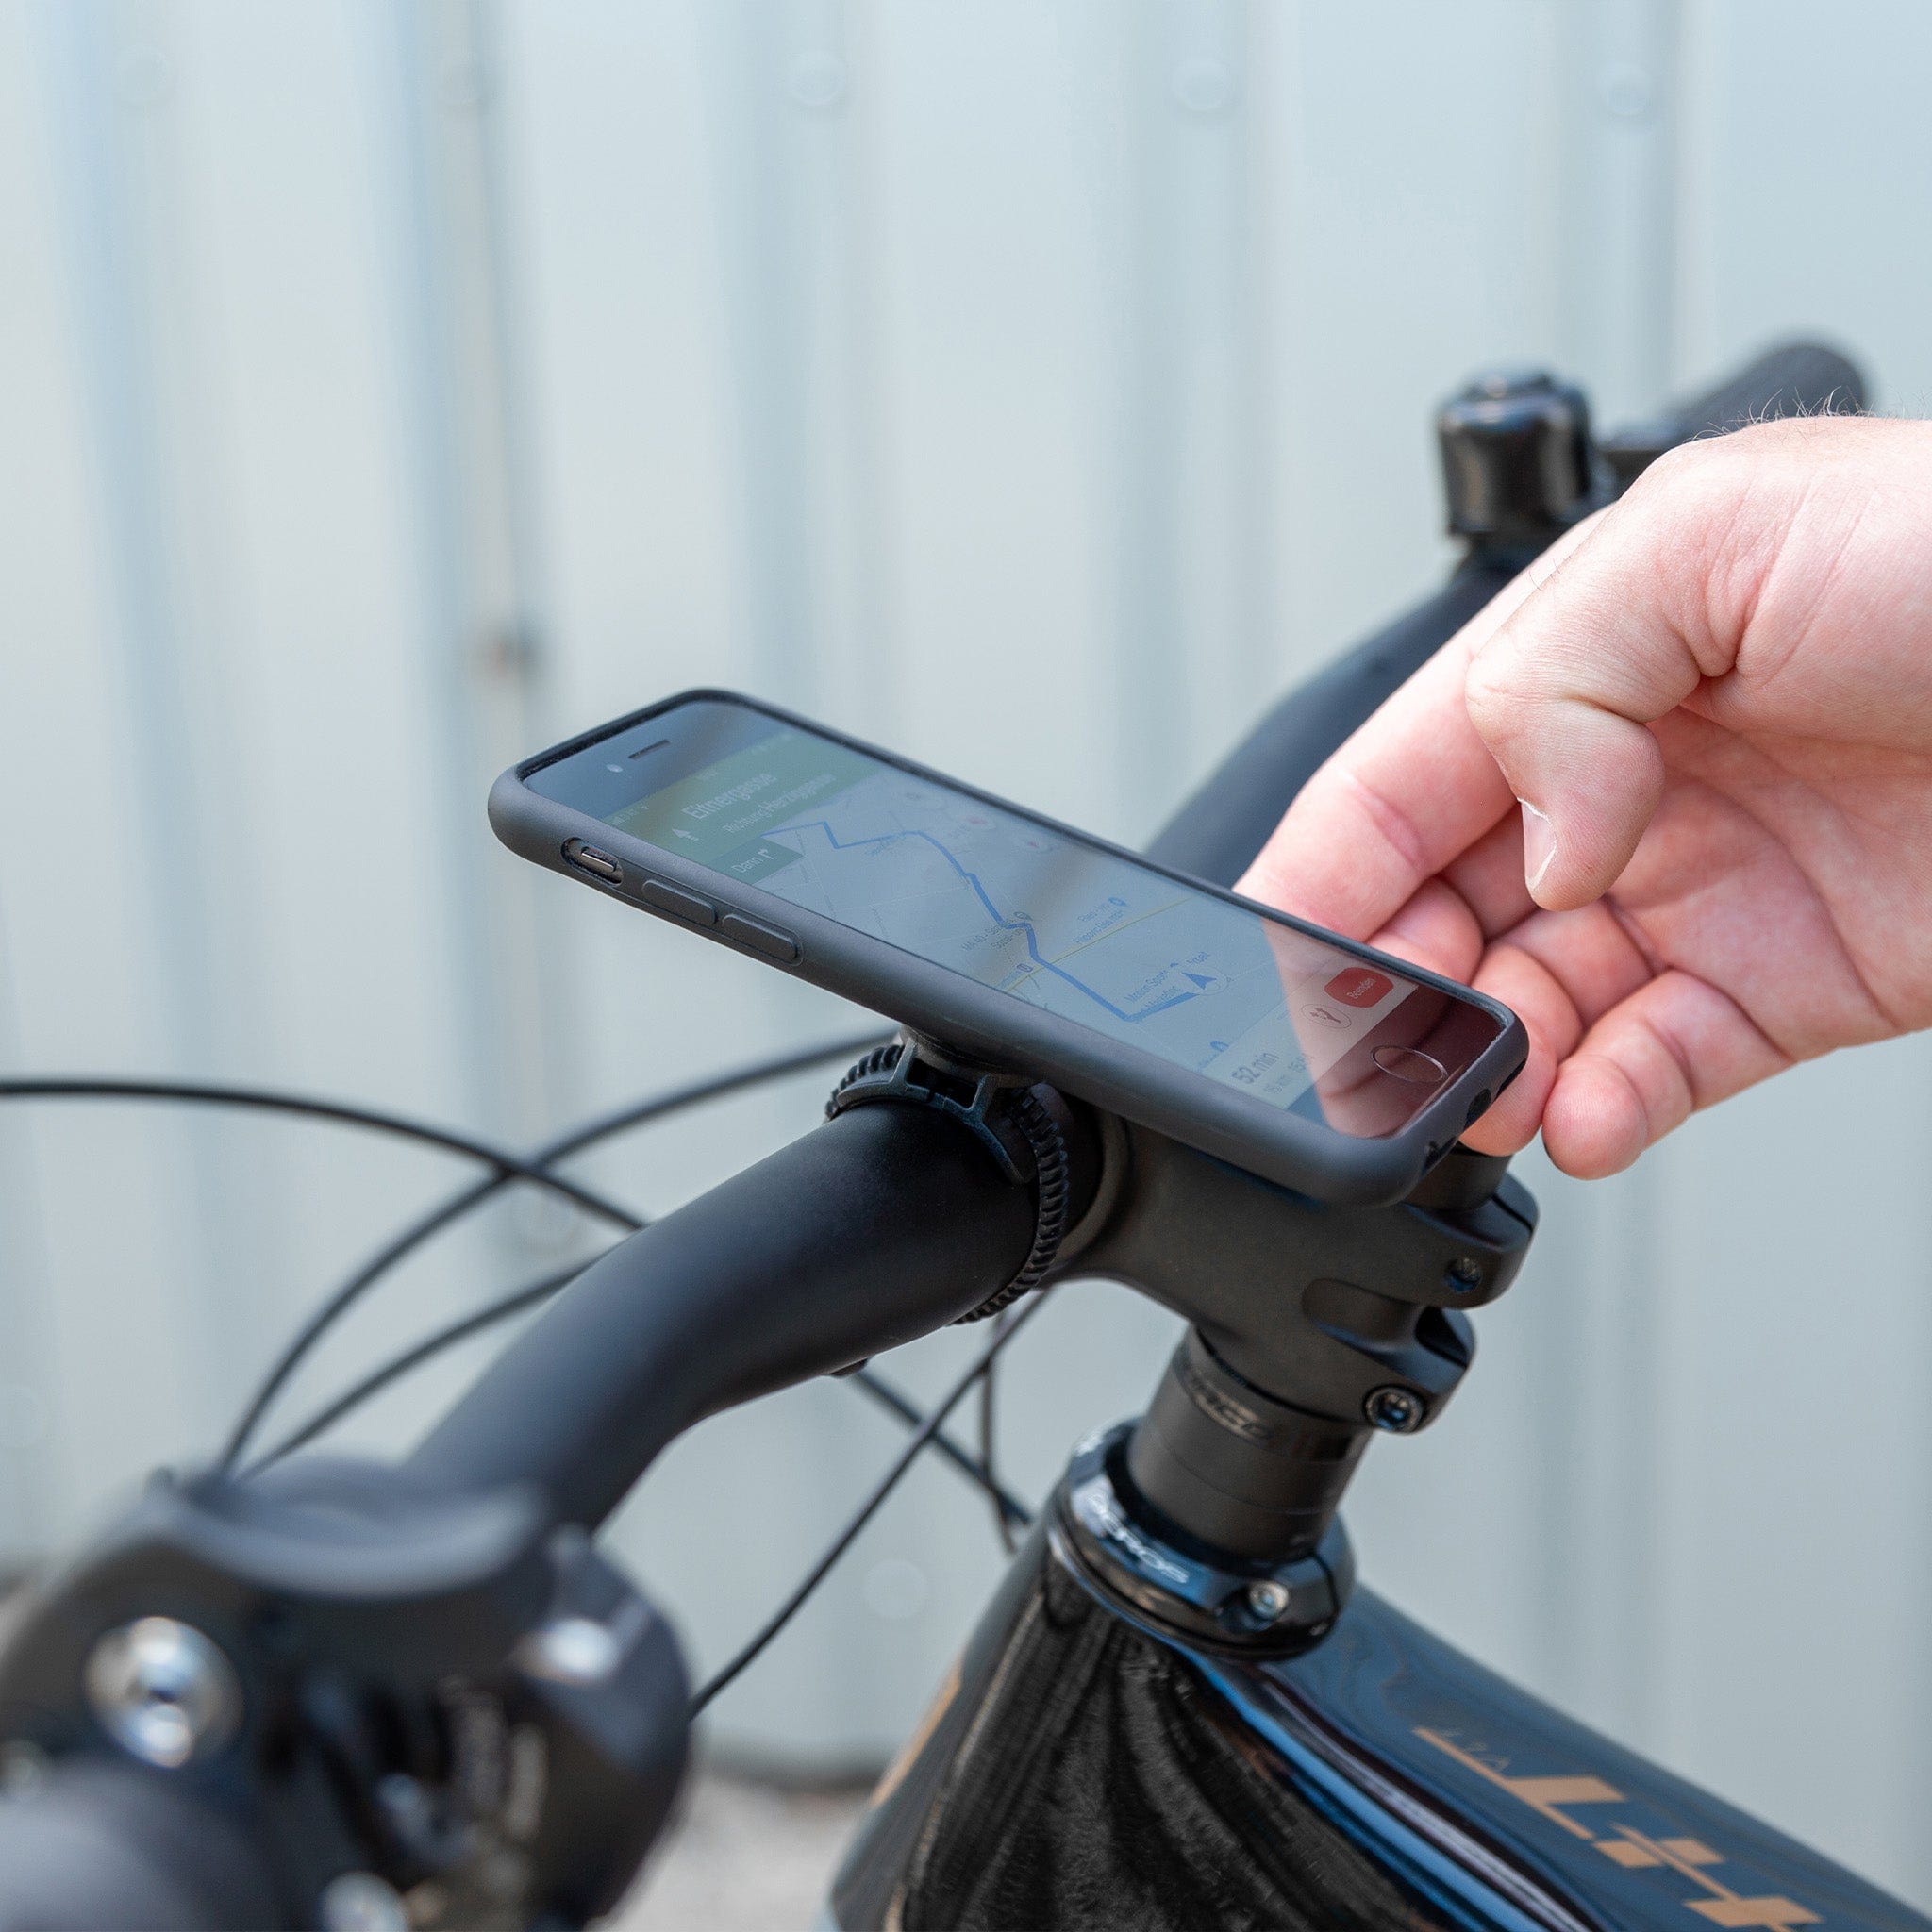 Mymisisa vélo vélo téléphone autocollant montage support de